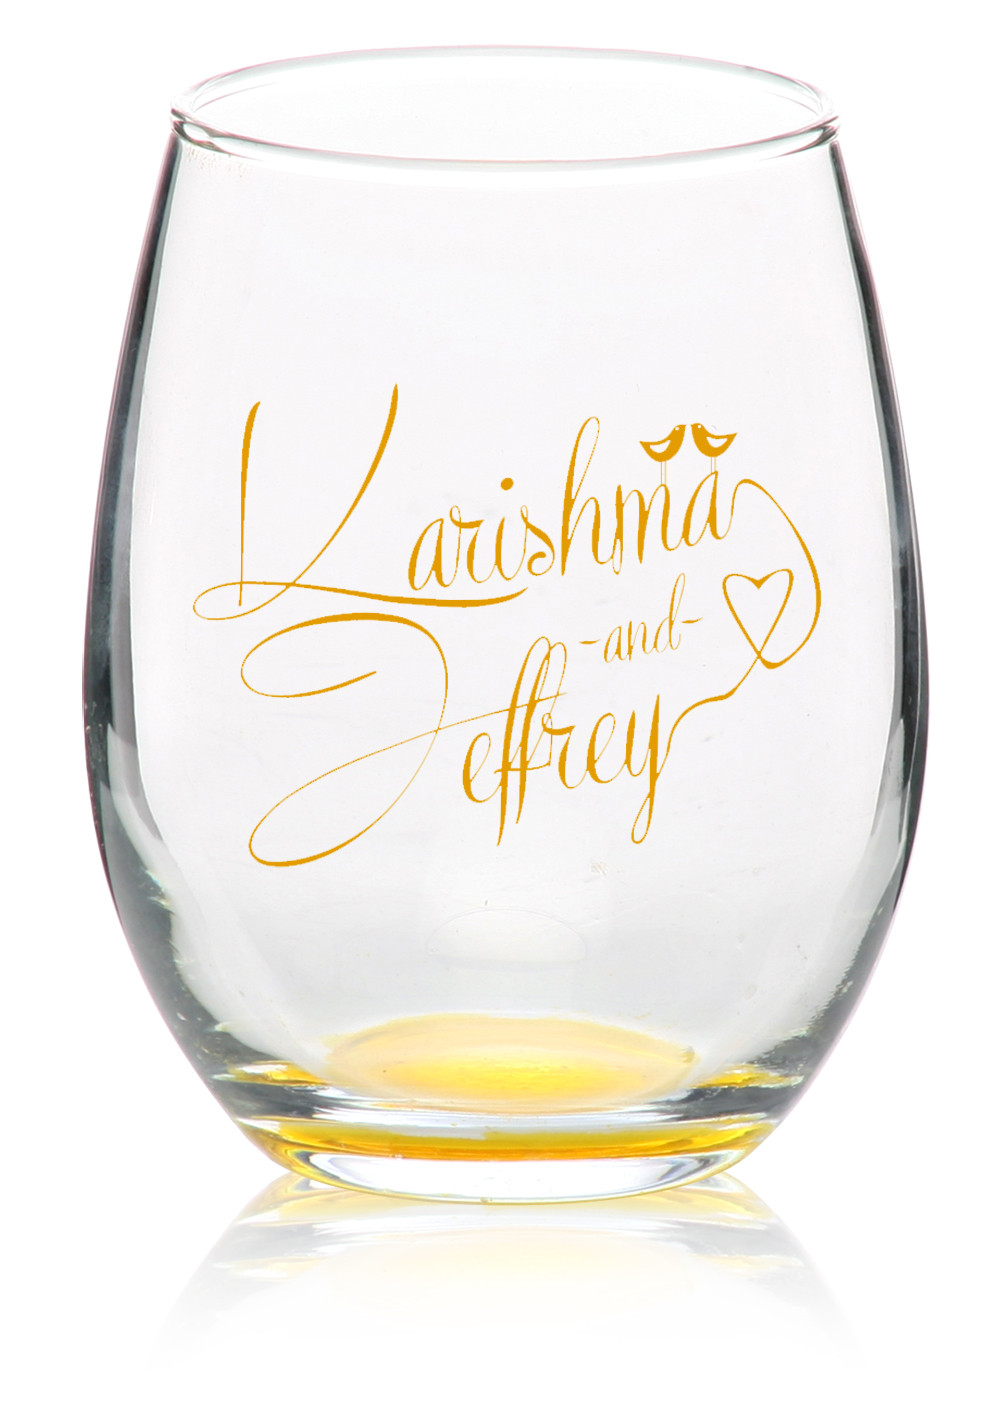 Stemless Wine Glasses Wedding Favors
 Custom Stemless Wine Glasses Personalized Wine Glasses